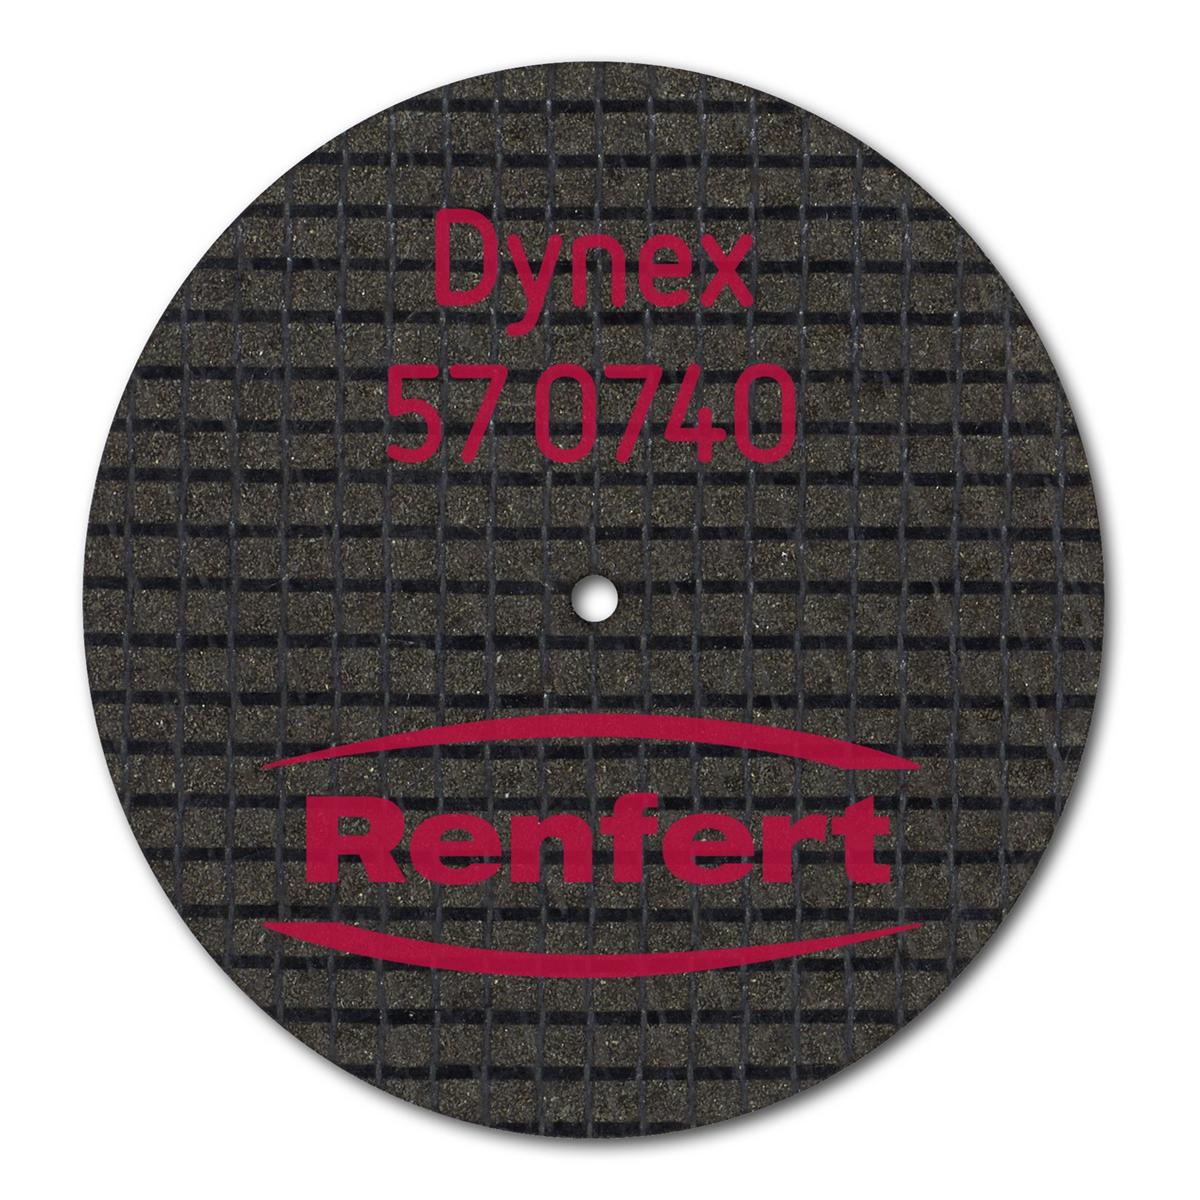 Dynex Trennscheiben für NEM und Modellguss - Ø 40 mm, Stärke 0,7 mm, Packung 20 Stück